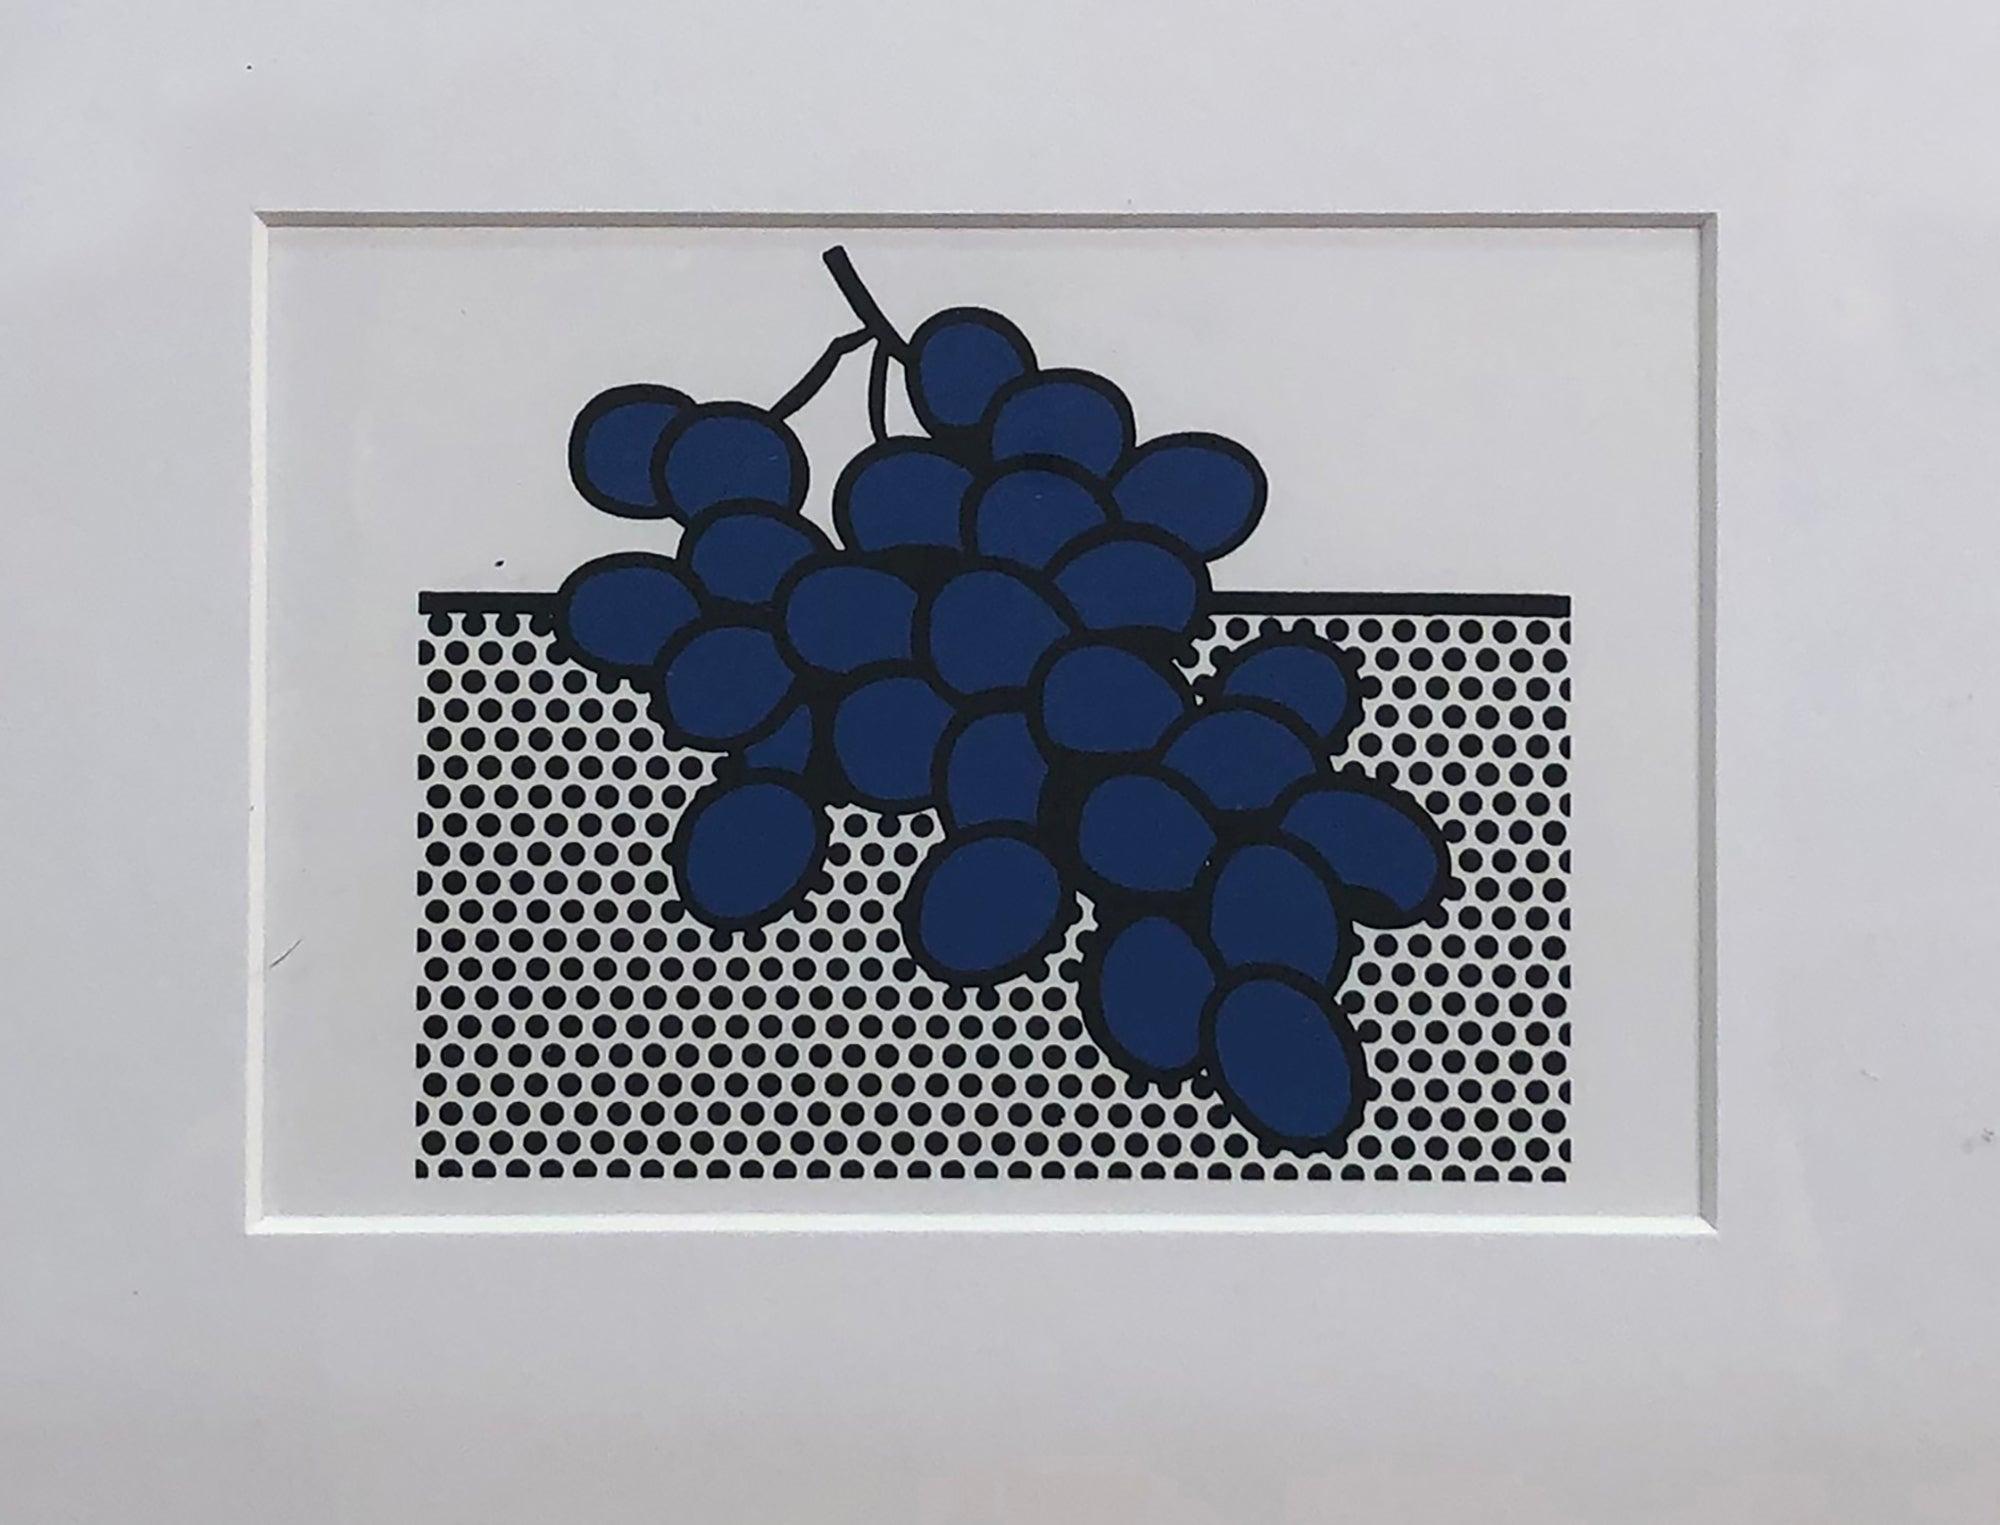 1972 Roy Lichtenstein 'Blue Grapes' Pop Art Blue, Black, White France Lithograph F - Print by (after) Roy Lichtenstein